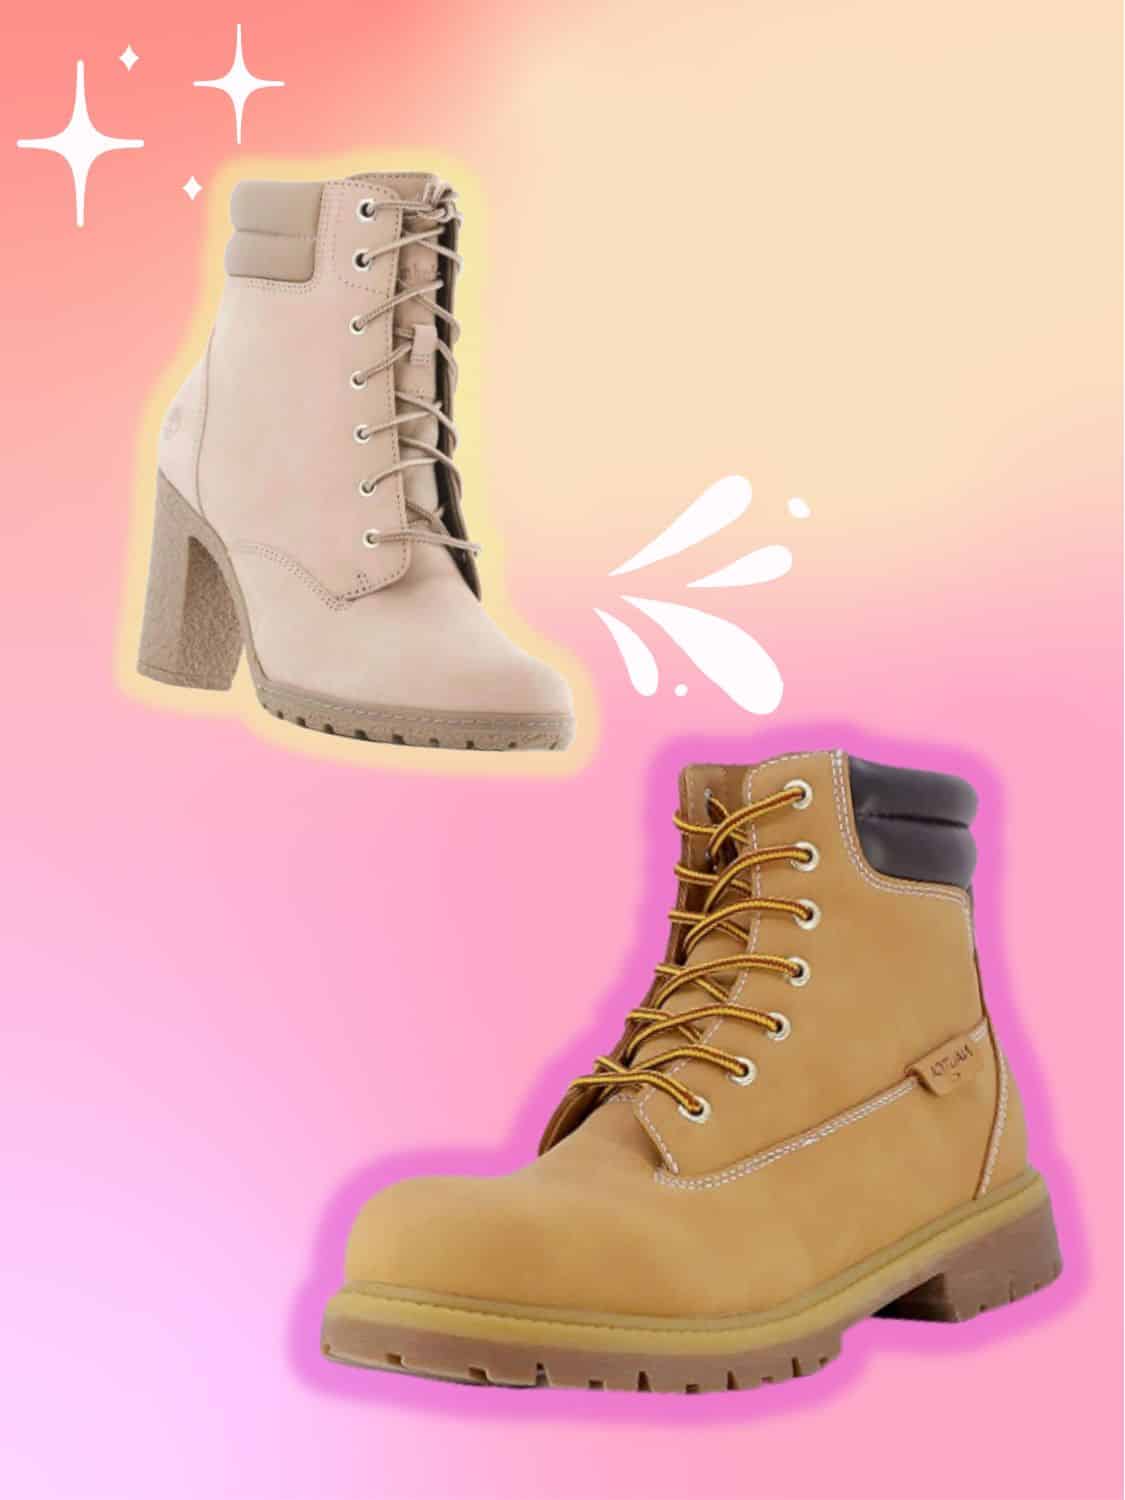 Timberland Women's Tillston 3.5” High Heel Wheat Boots A6334 Size 7 | eBay